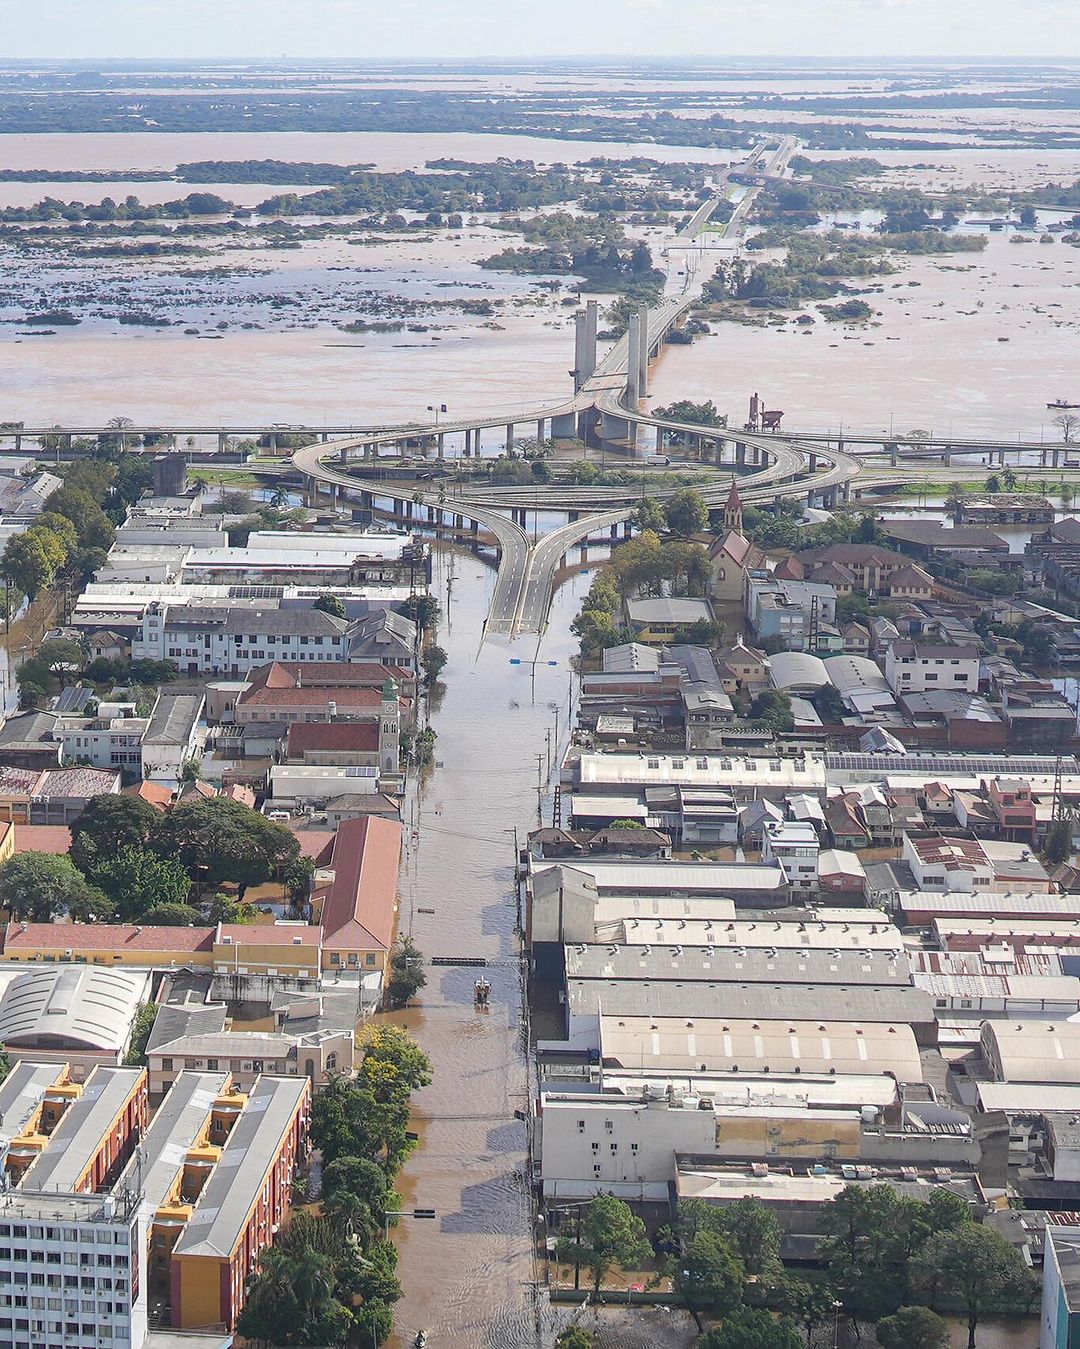 Imágenes aéreas de Porto Alegre y Canoas ofrecidas por el Gobierno de Rio Grande do Sul. Fotos de Maurício Tonetto